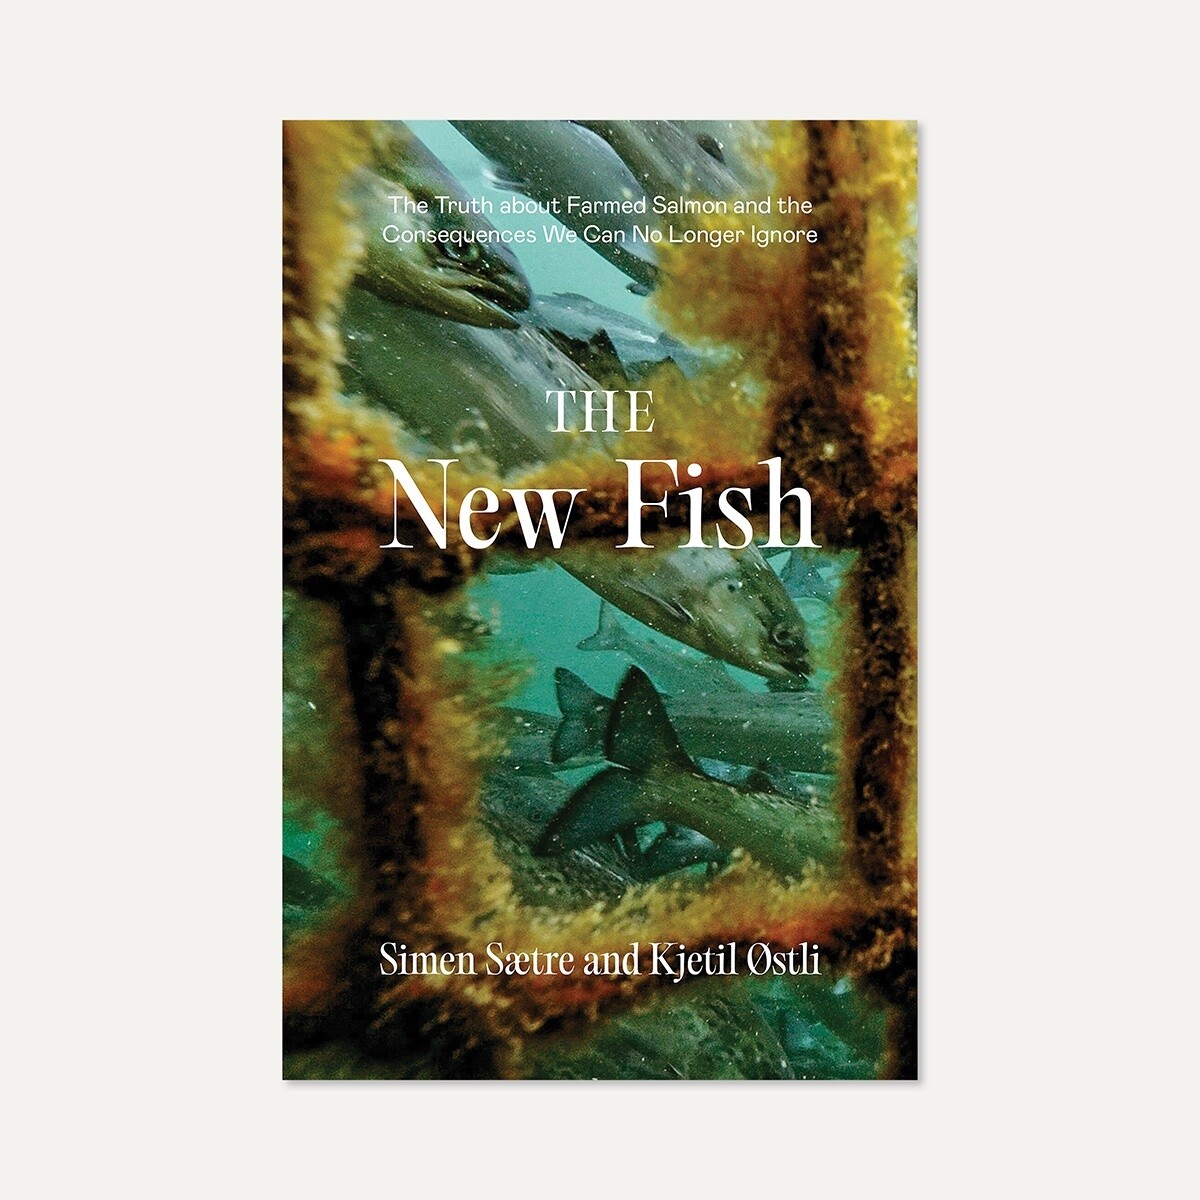 The New Fish — Simen Sætre and Kjetil Østli